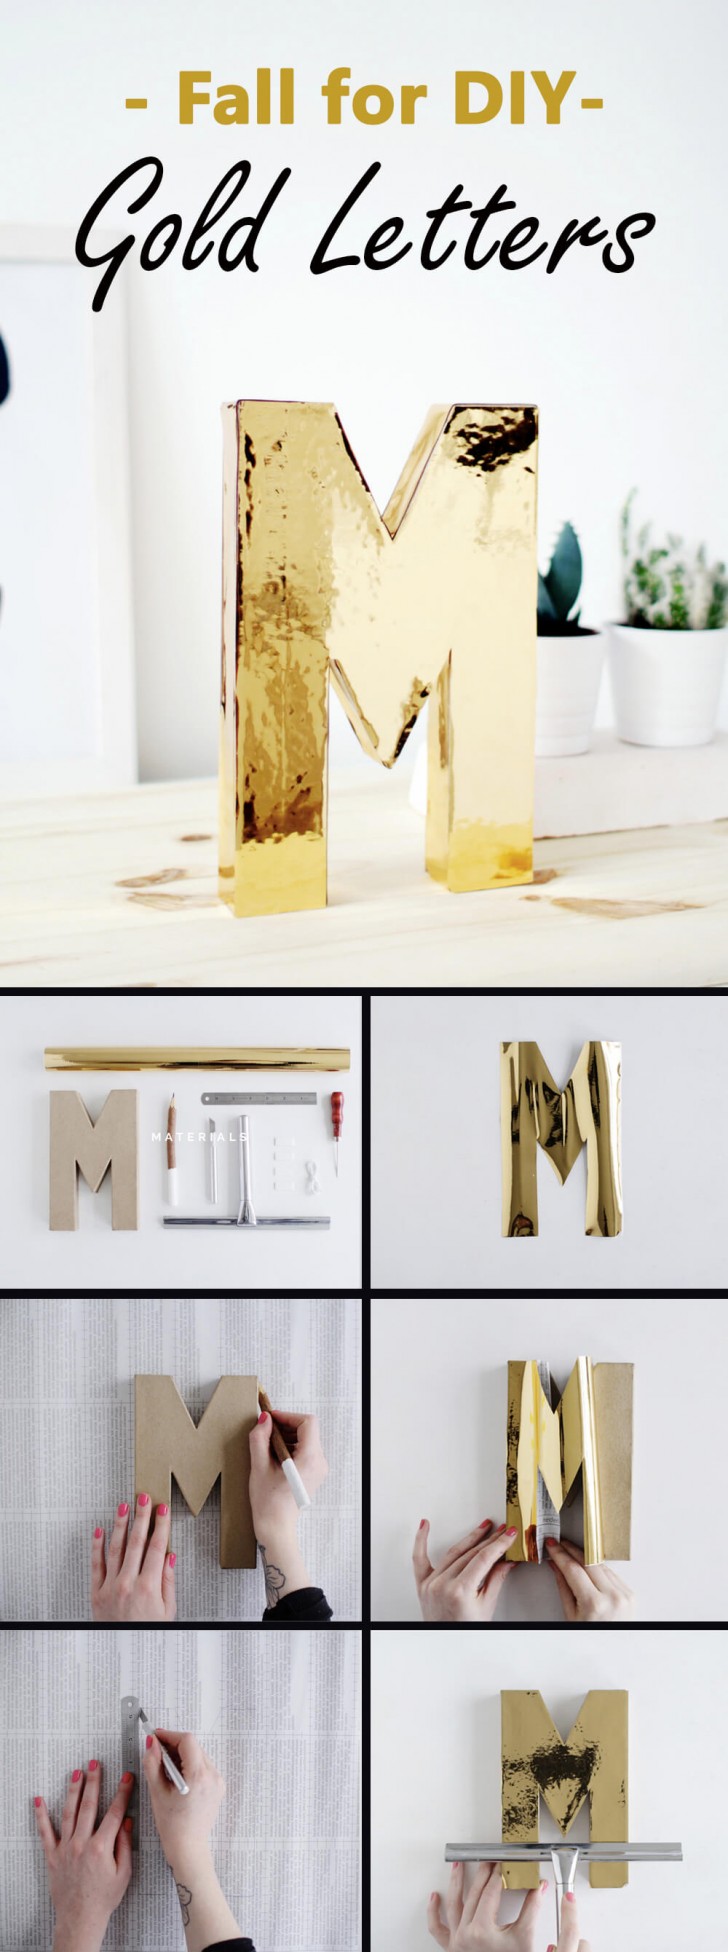 2. Modellate la lettera di cartone e poi rivestitela con pellicola dorata per un risultato glamour